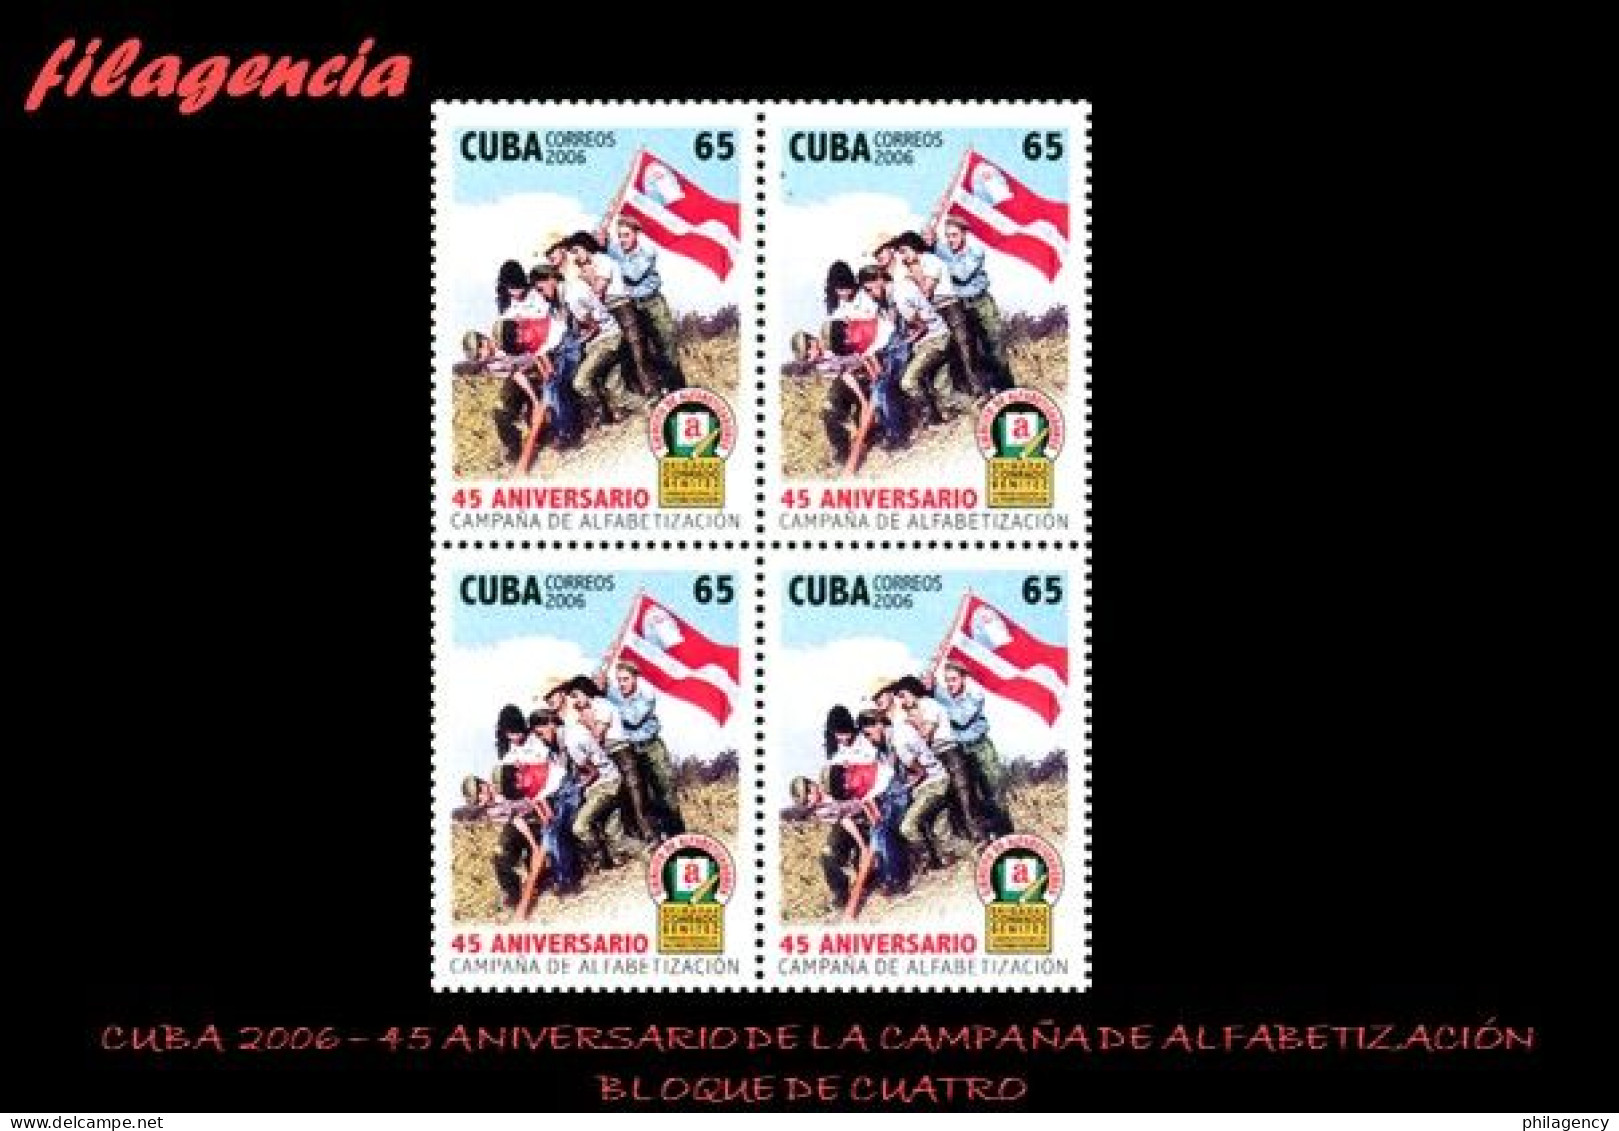 CUBA. BLOQUES DE CUATRO. 2006-37 45 ANIVERSARIO DE LA CAMPAÑA DE ALFABETIZACIÓN - Nuevos